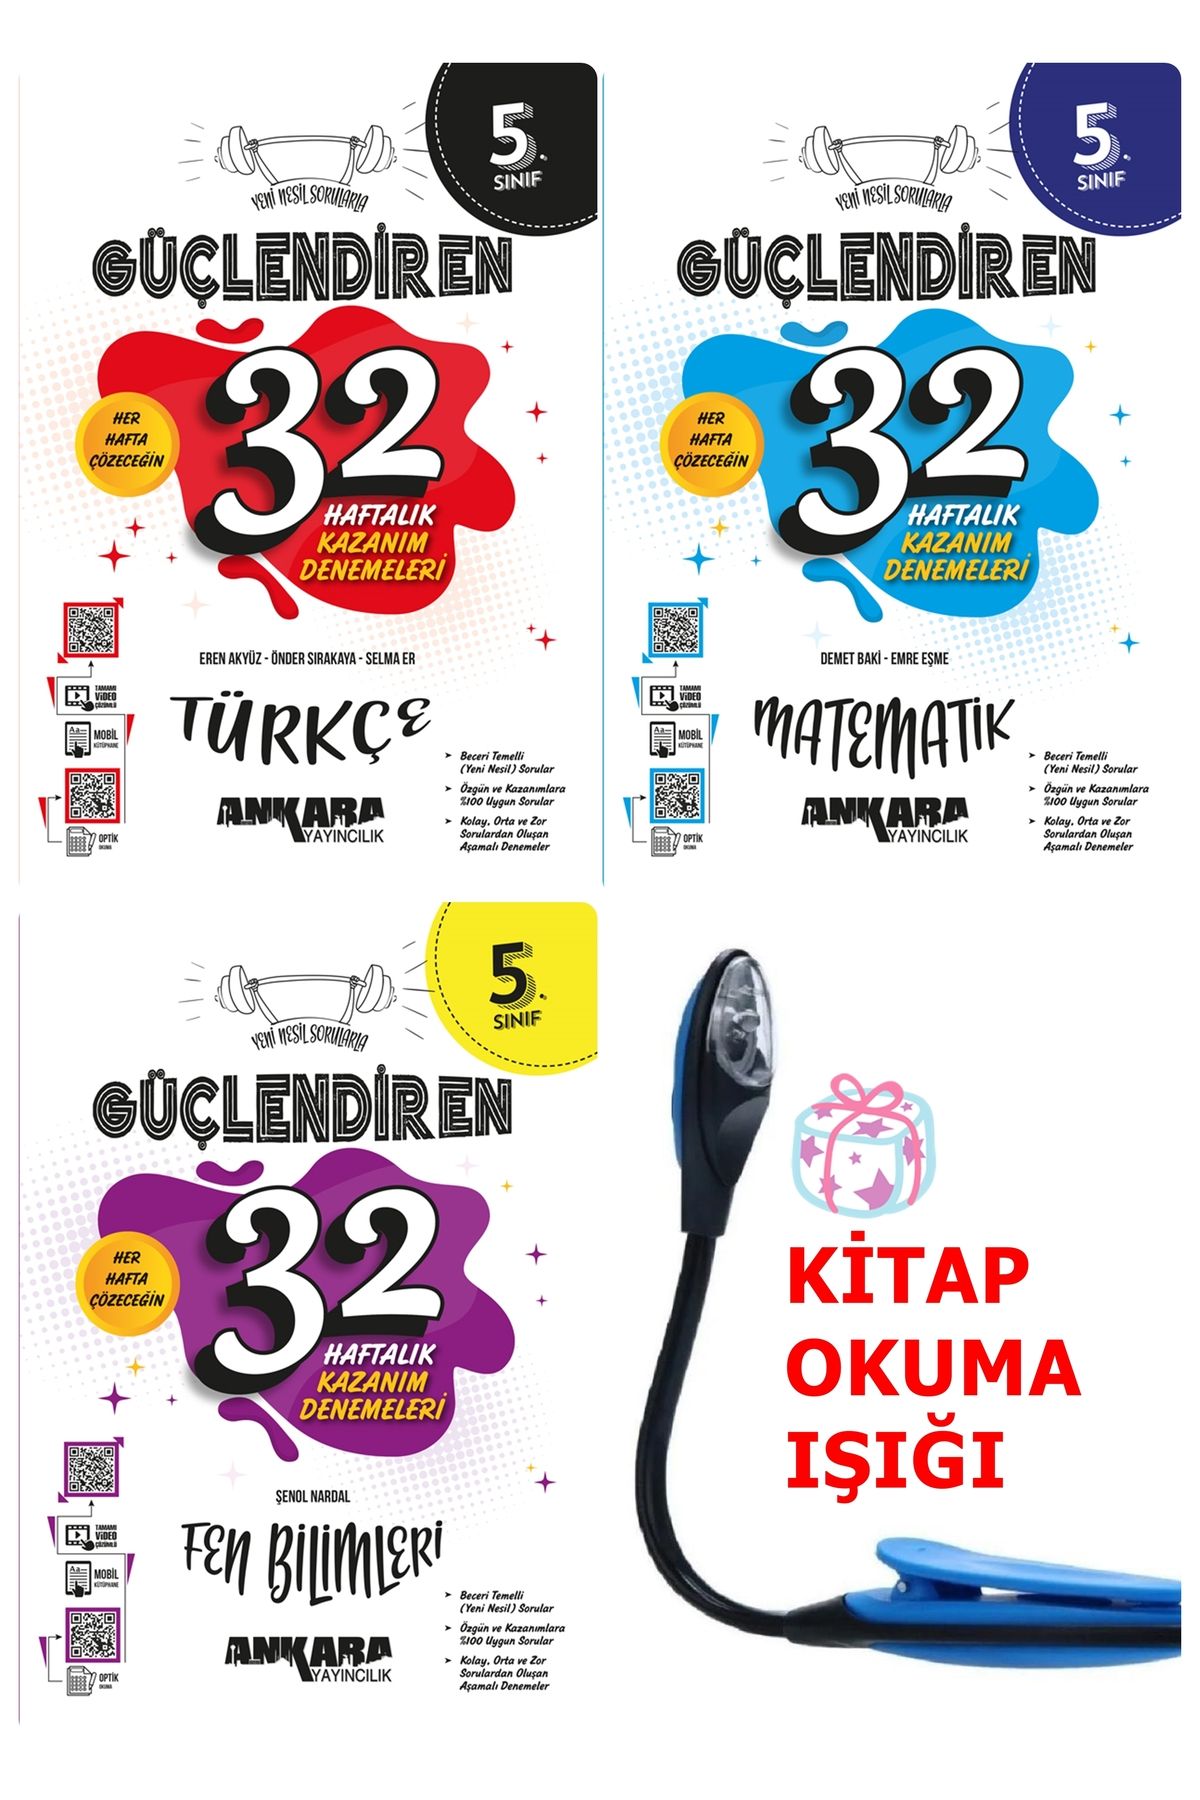 Ankara Yayıncılık 5 Sınıf Türkçe-Matematik-Fen Güçlendiren 32 Haftalık Denemeler FULL Set + Kitap Okuma Işığı Hediye